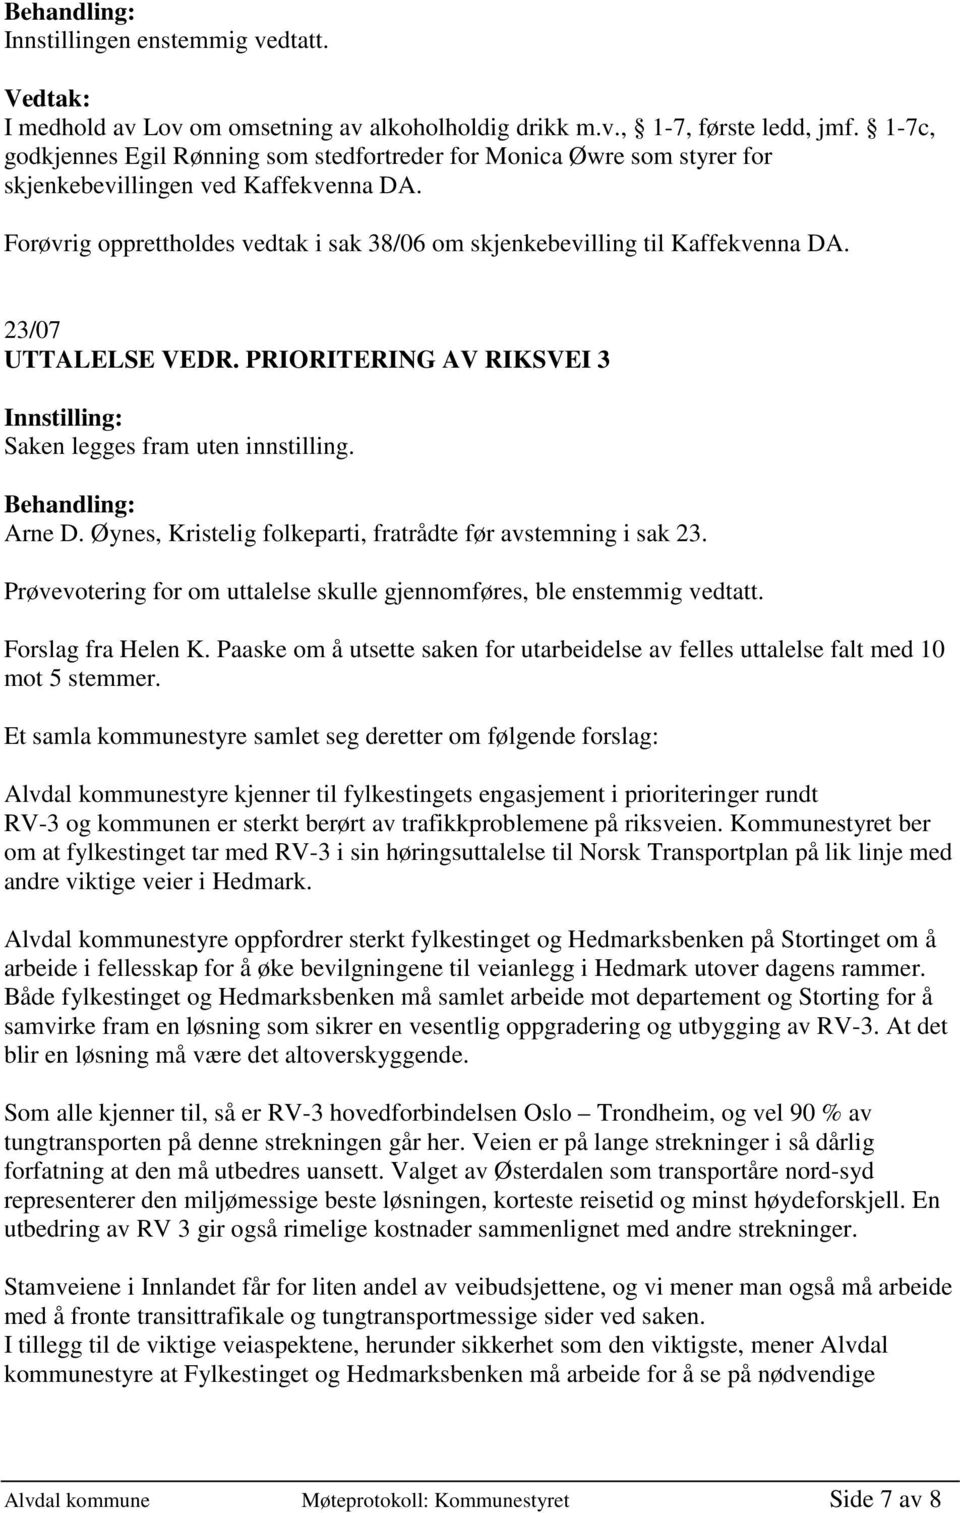 23/07 UTTALELSE VEDR. PRIORITERING AV RIKSVEI 3 Saken legges fram uten innstilling. Arne D. Øynes, Kristelig folkeparti, fratrådte før avstemning i sak 23.